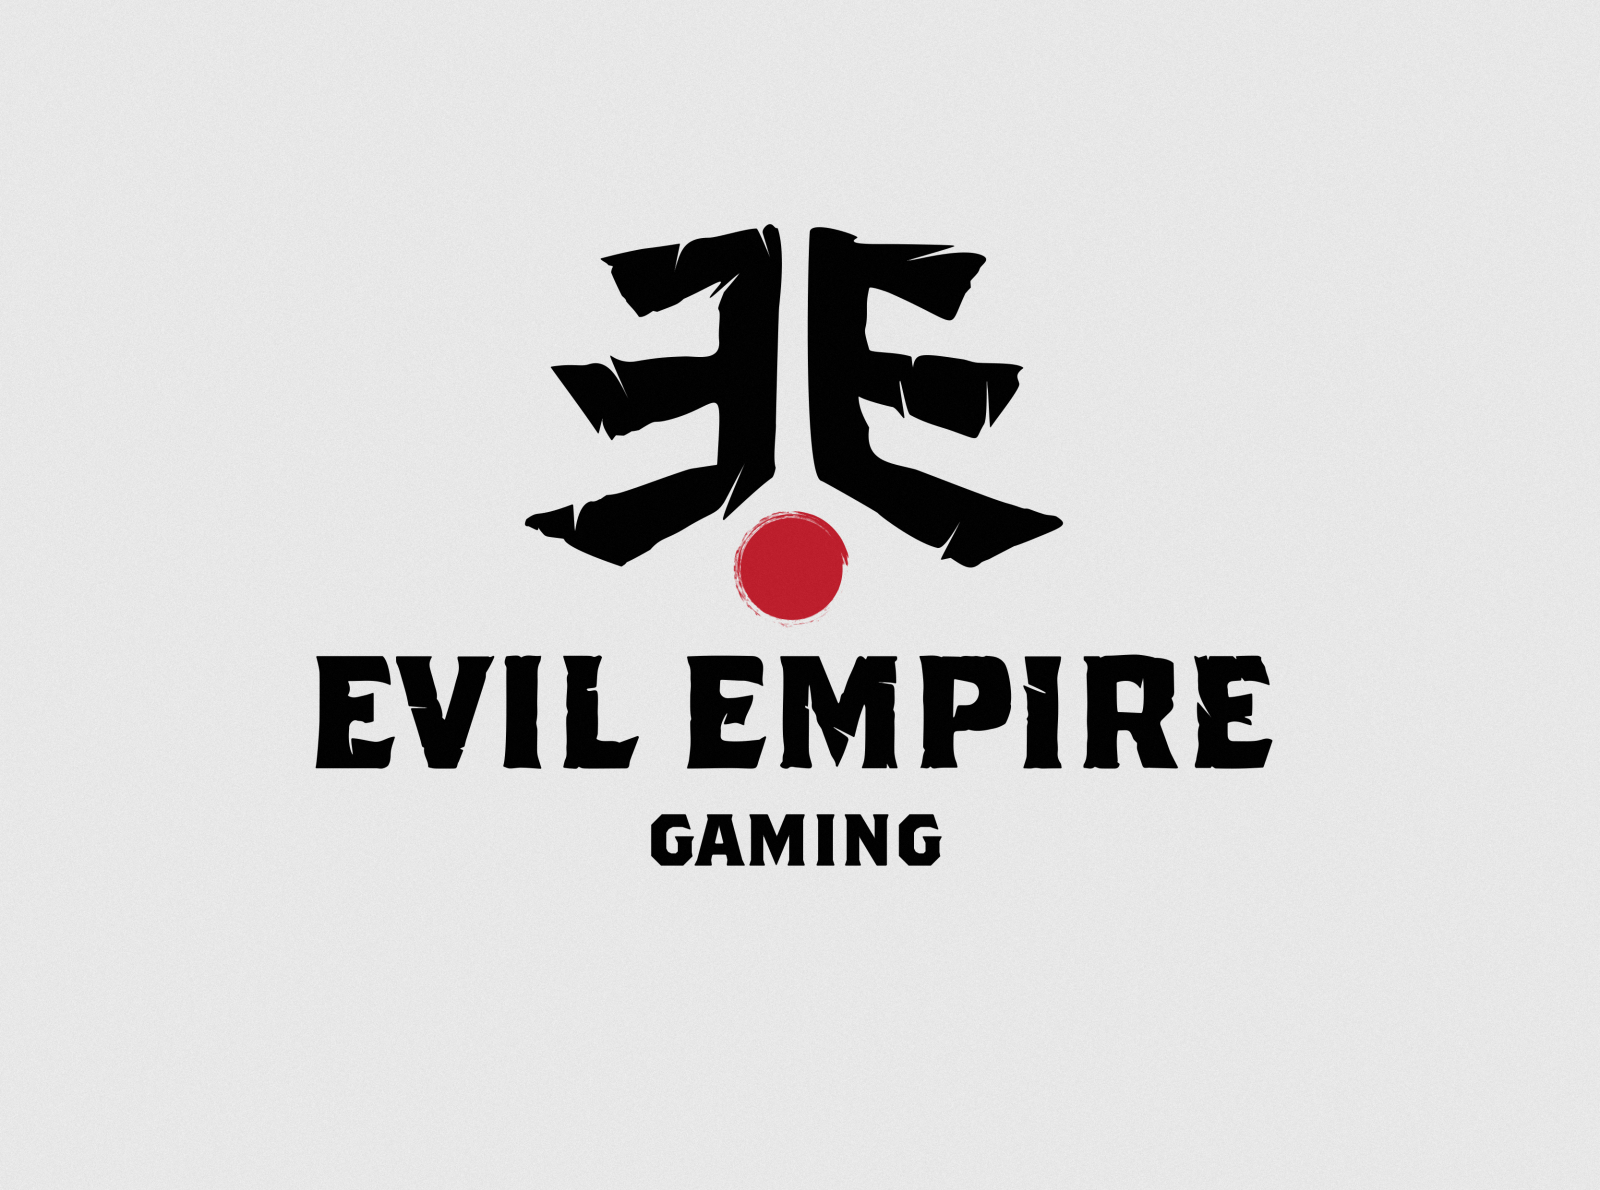 Evil Empire Gaming logo by Mihail Zhelyazkov on Dribbble